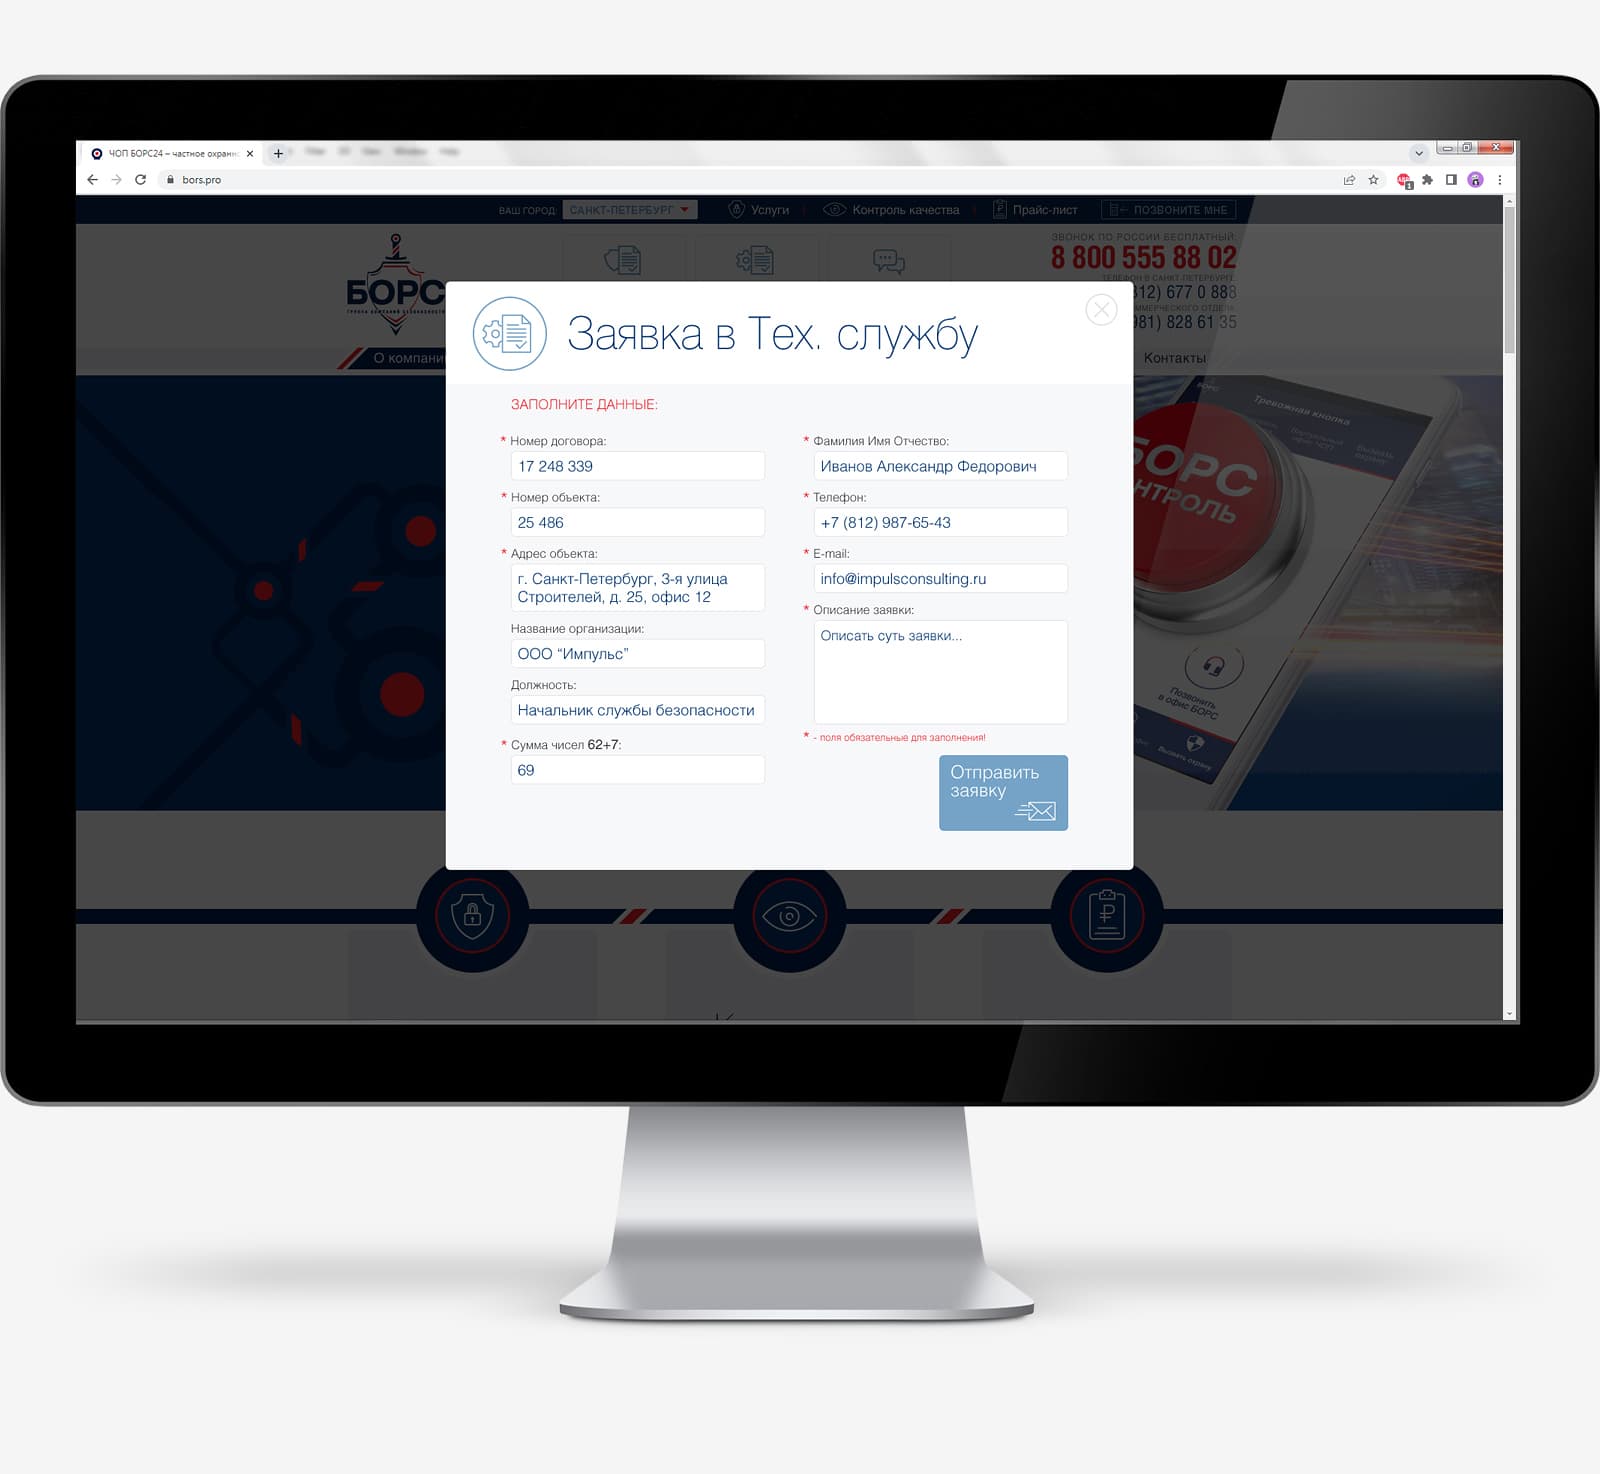 Дизайн и программирование корпоративного сайта для Группы компаний безопасности БОРС